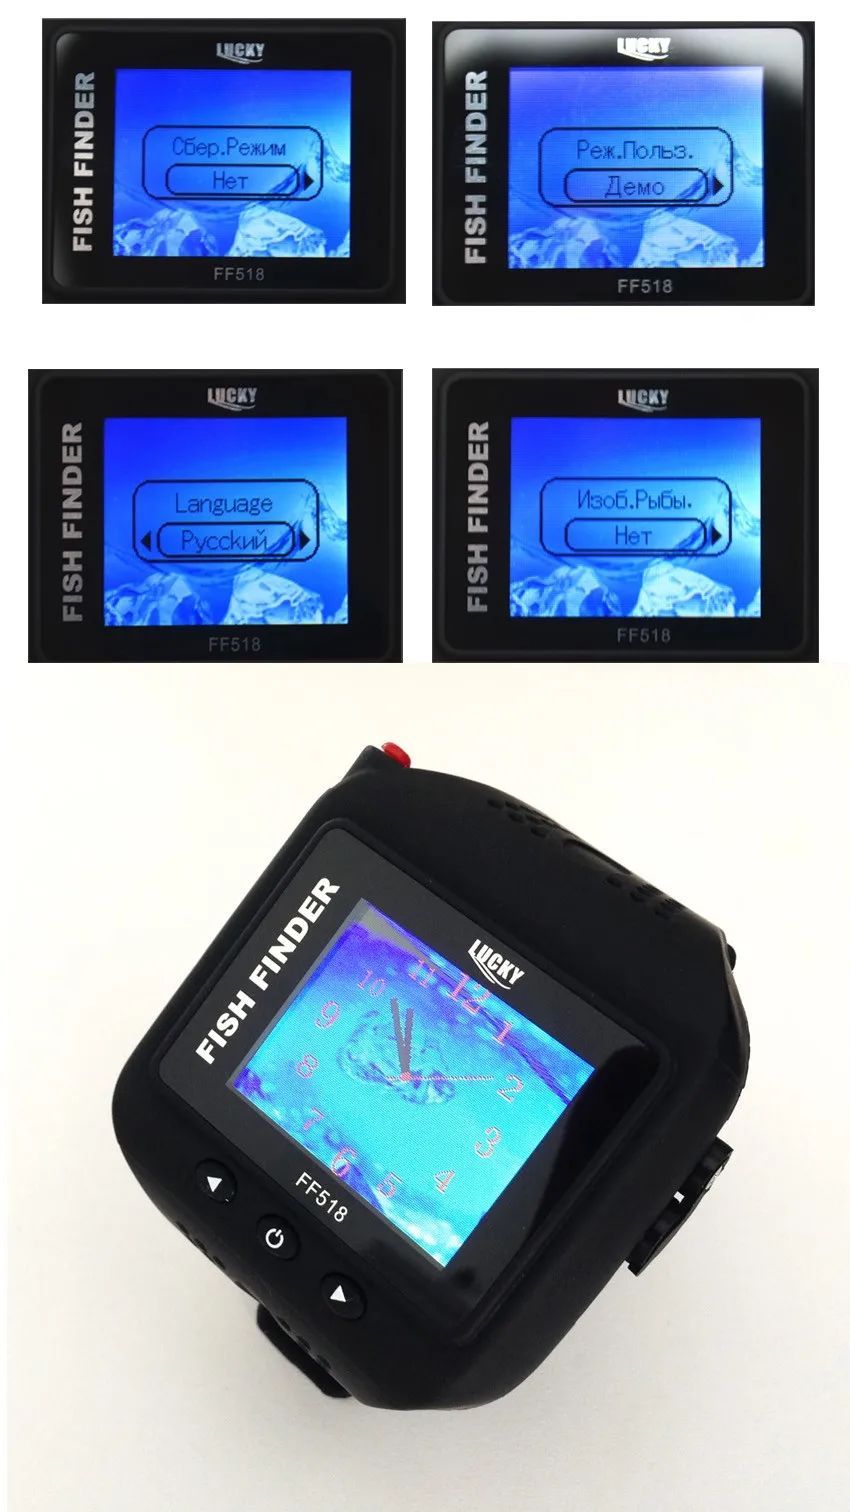 LUCKY Русский Меню рыболокатор водонепроницаемый красочные цифровые часы стиль 200 футов(60 метров) диапазон беспроводной рыболовные инструменты